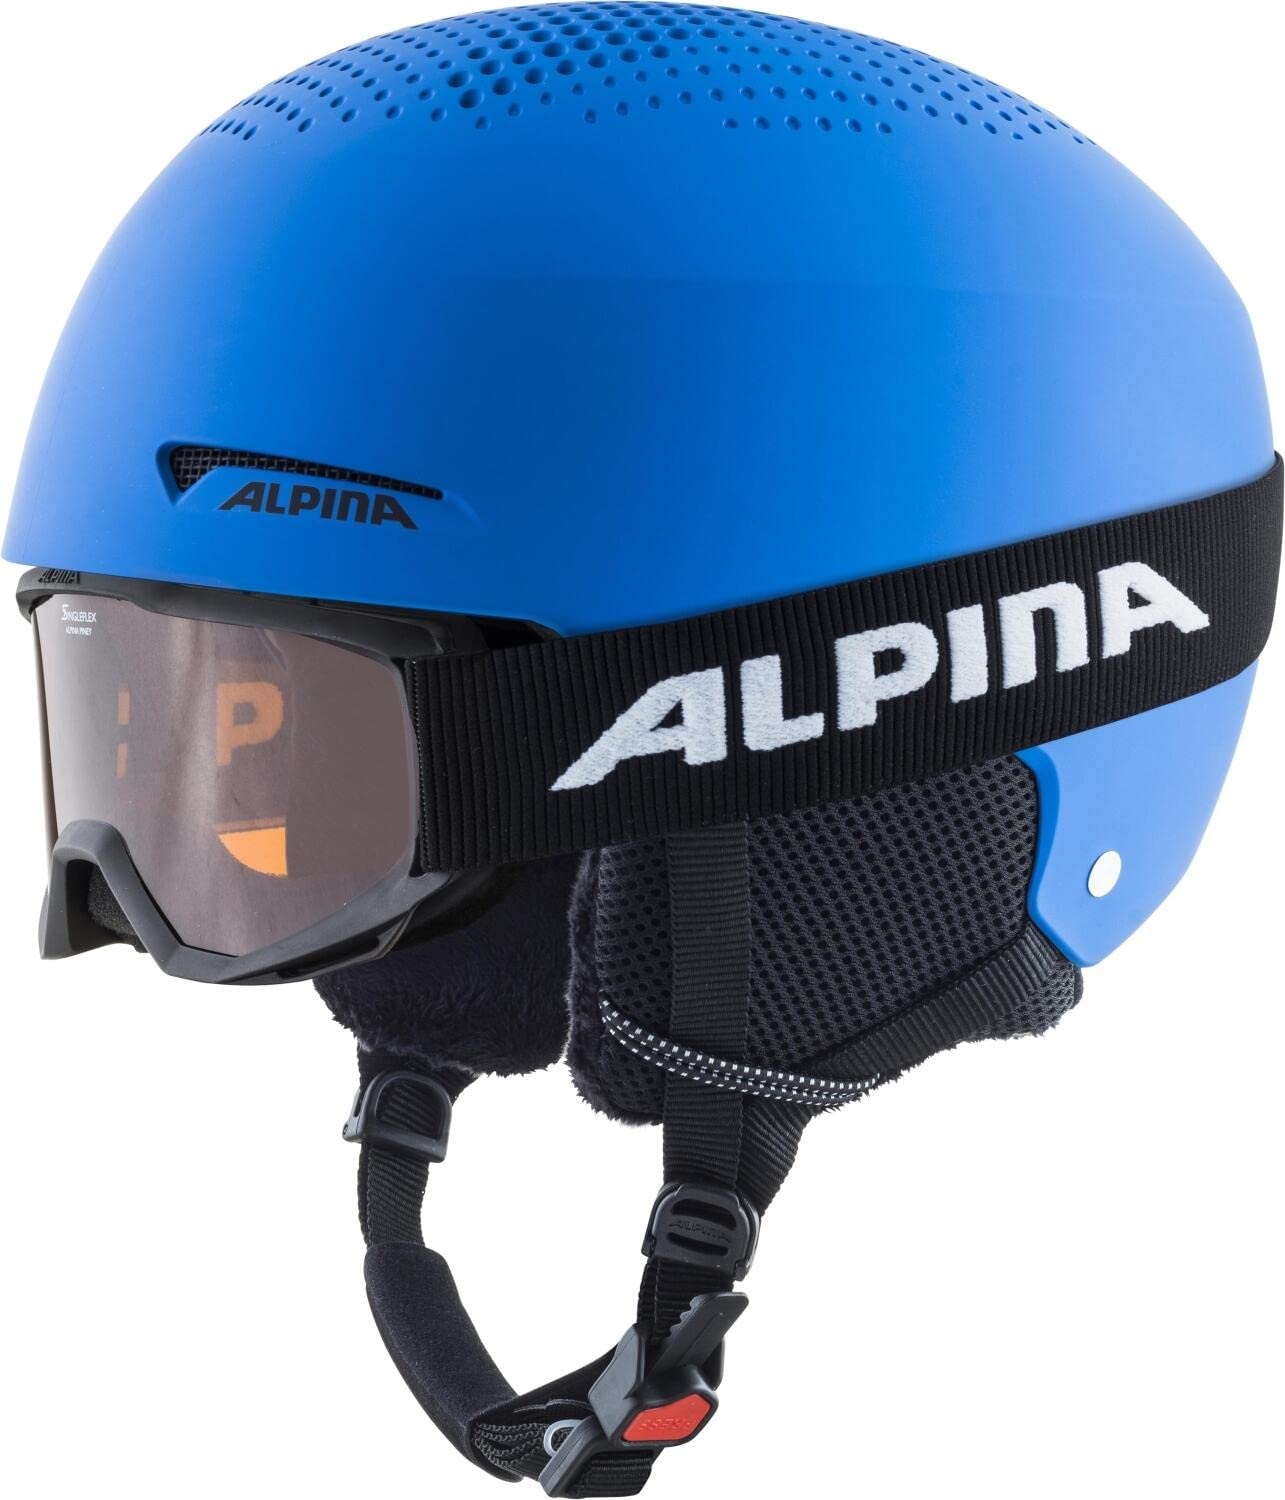 ALPINA ZUPO SET (+PINEY) - Hochwertiges, Sicheres & Robustes Set aus Skibrille & Skihelm Für Kinder, blue matt, 51-55 cm